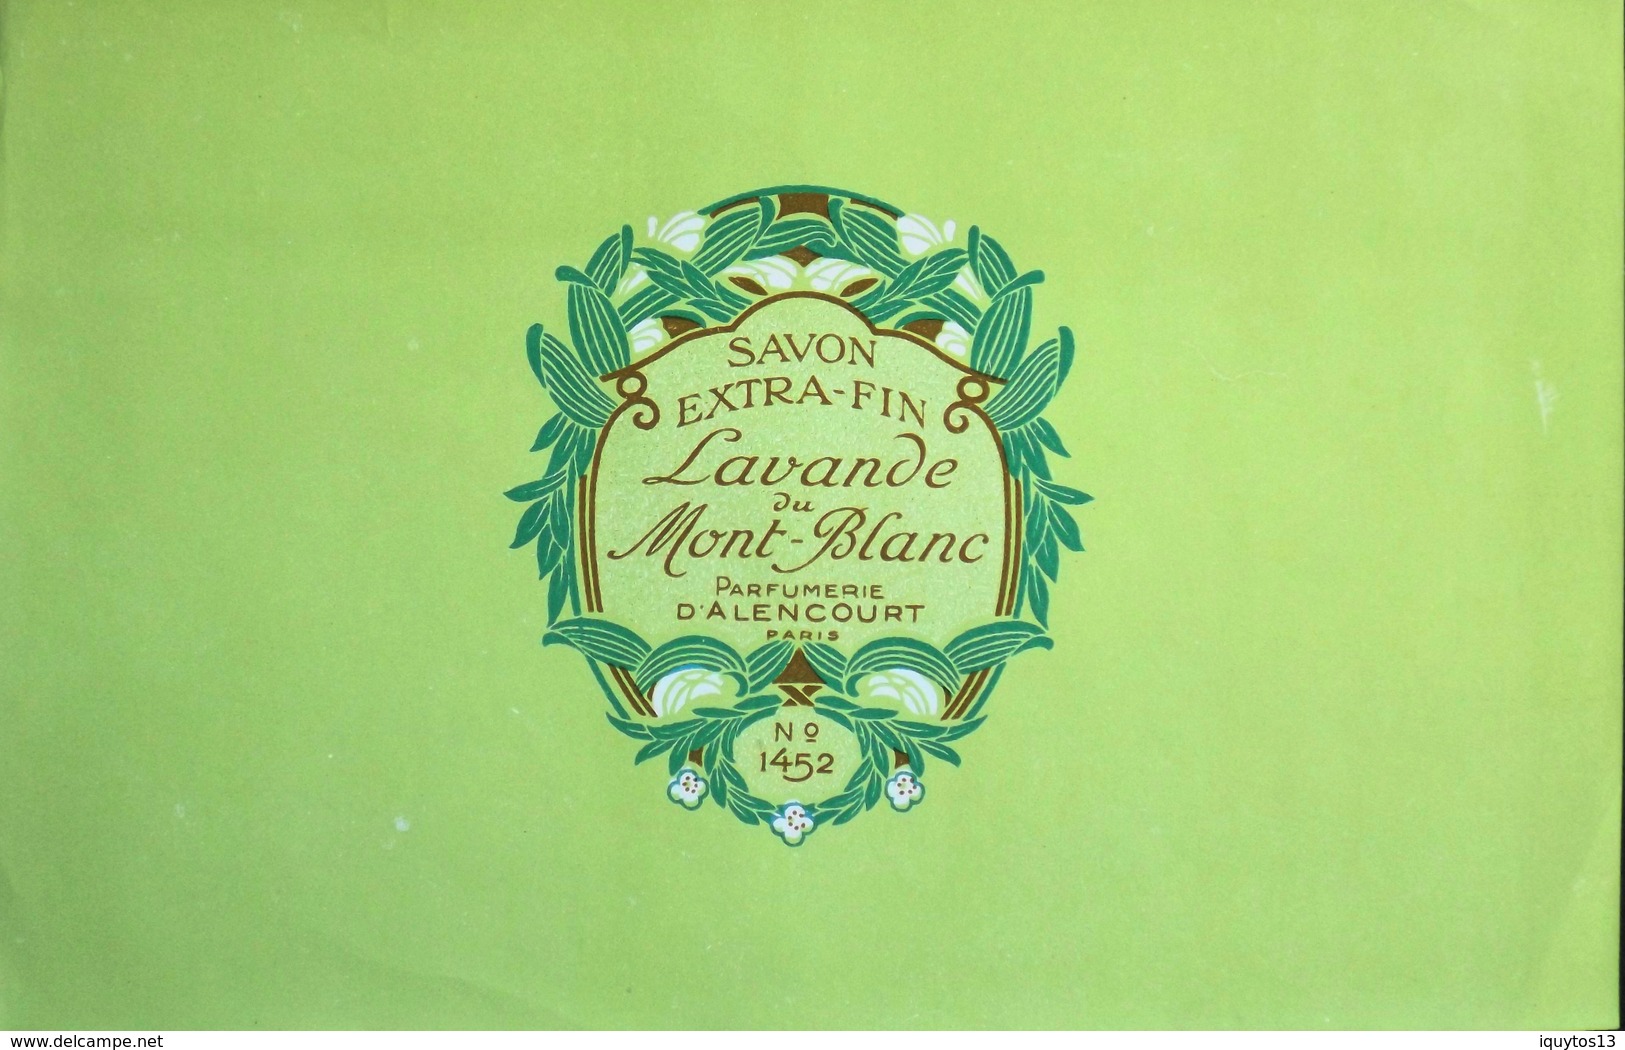 ETIQUETTE ANCIENNE - SAVON EXTRA-FIN - LAVANDE Du MONT-BLANC N° 1452 - Parfumerie D'Alencourt Paris - TBE - Etichette